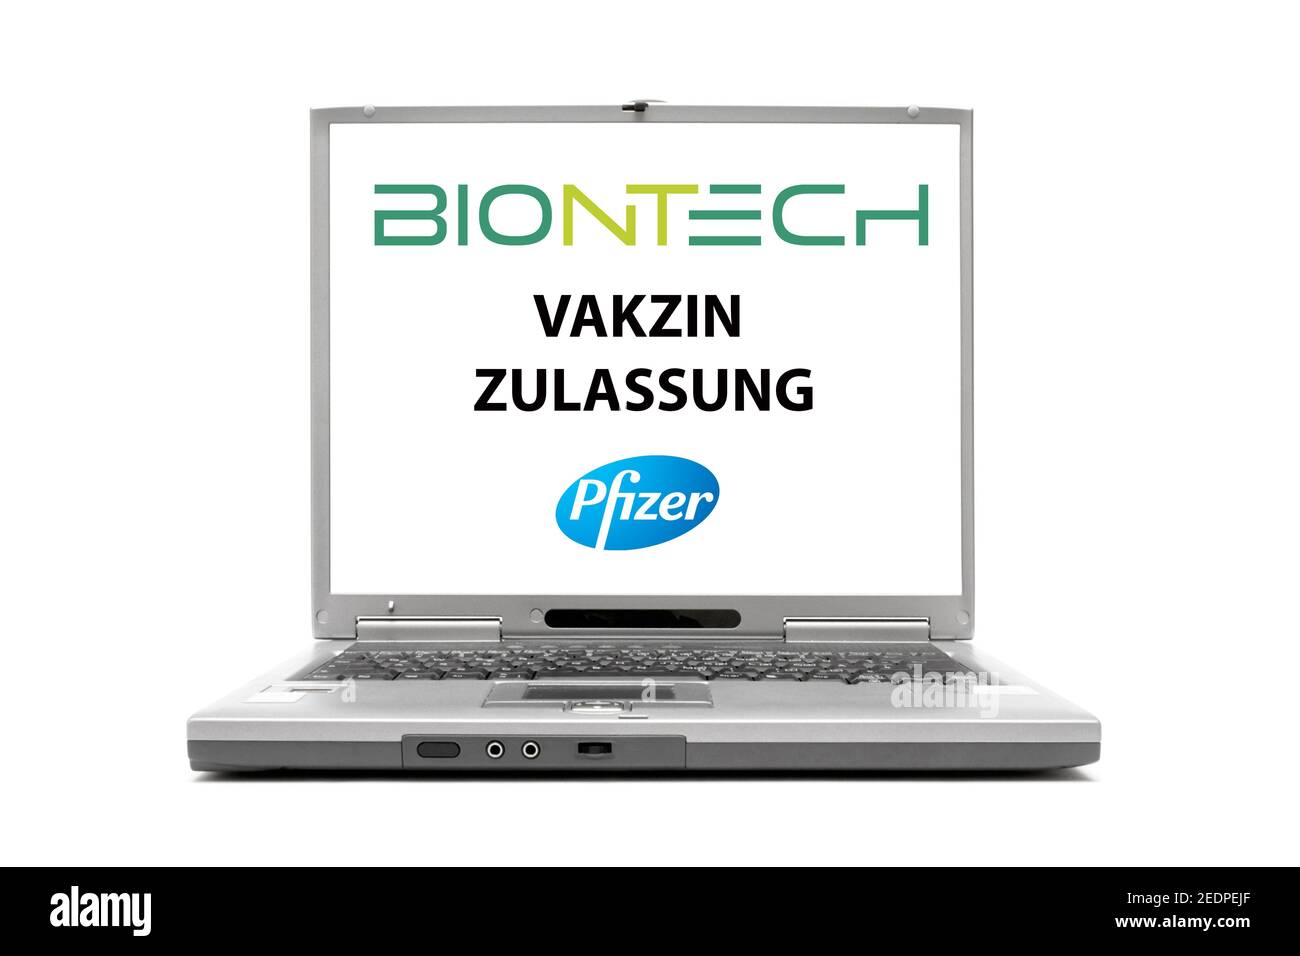 Rotulación para portátiles BioNTech, Pfizer, Zulassung, Vakzine, acreditación, Alemania Foto de stock